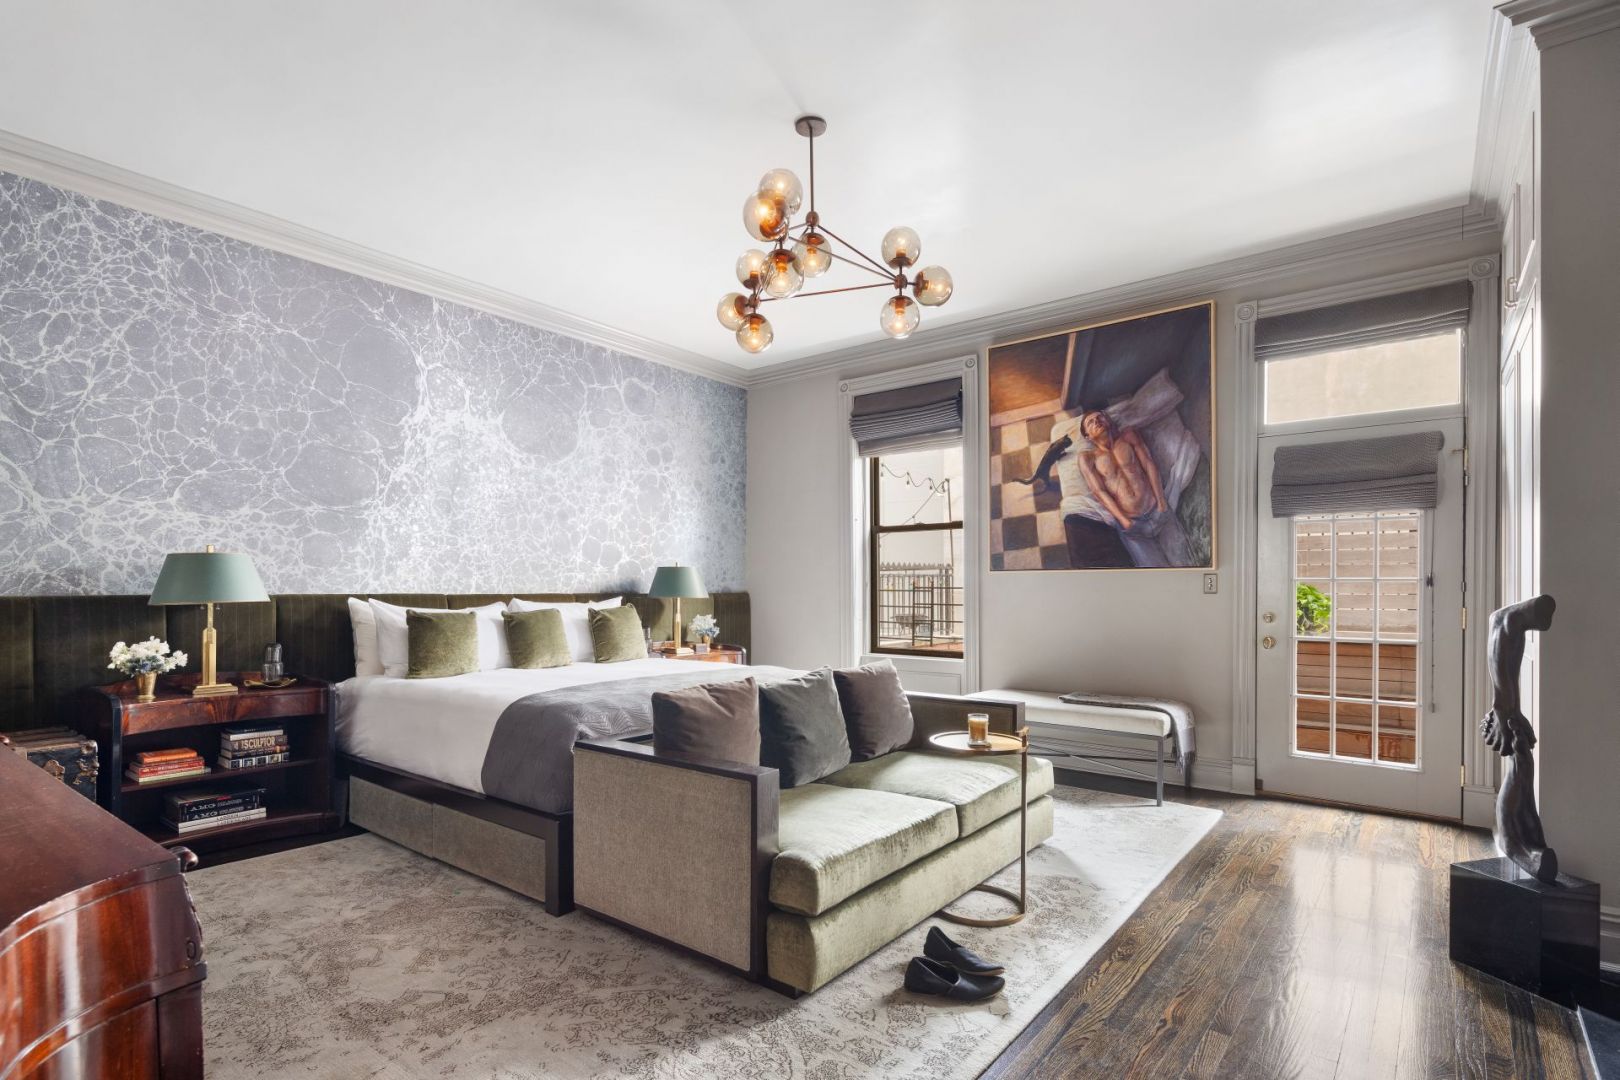 Dom aktora Neila Patricka Harrisa w nowojorskim Harlemie ma ponad 700 m2. został urządzony w eklektyczny, awangardowym stylu. Klasa! Źródło: TopTenRealEstatesDeals.com